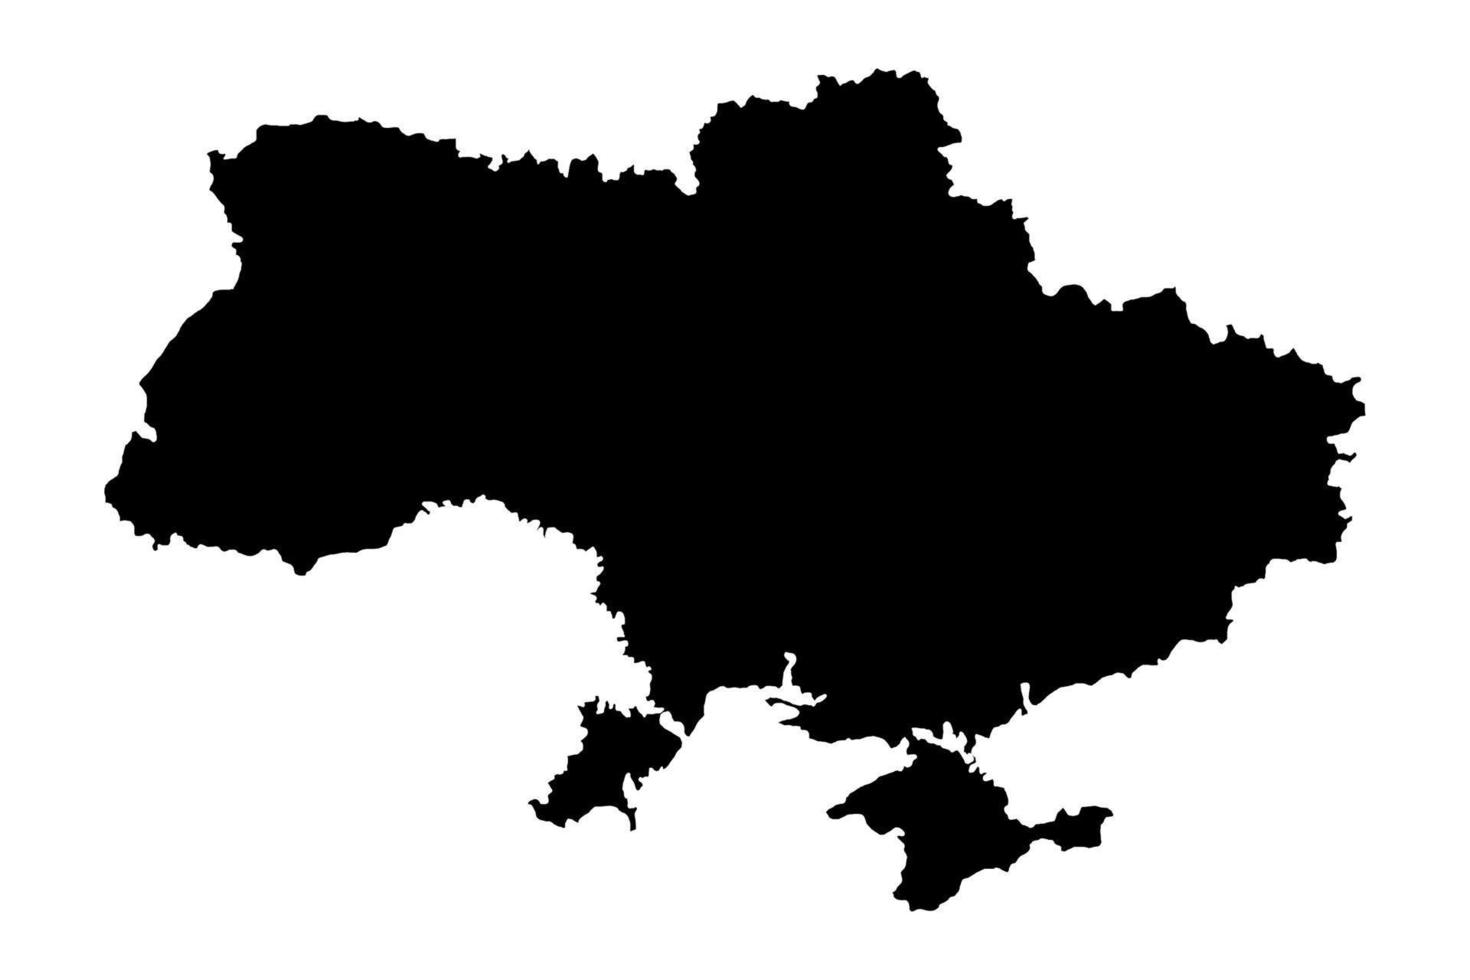 ukraina. siluett av Ukraina land karta. europeiska länder. ukrainskt territorium gränsar till crimea. vektor